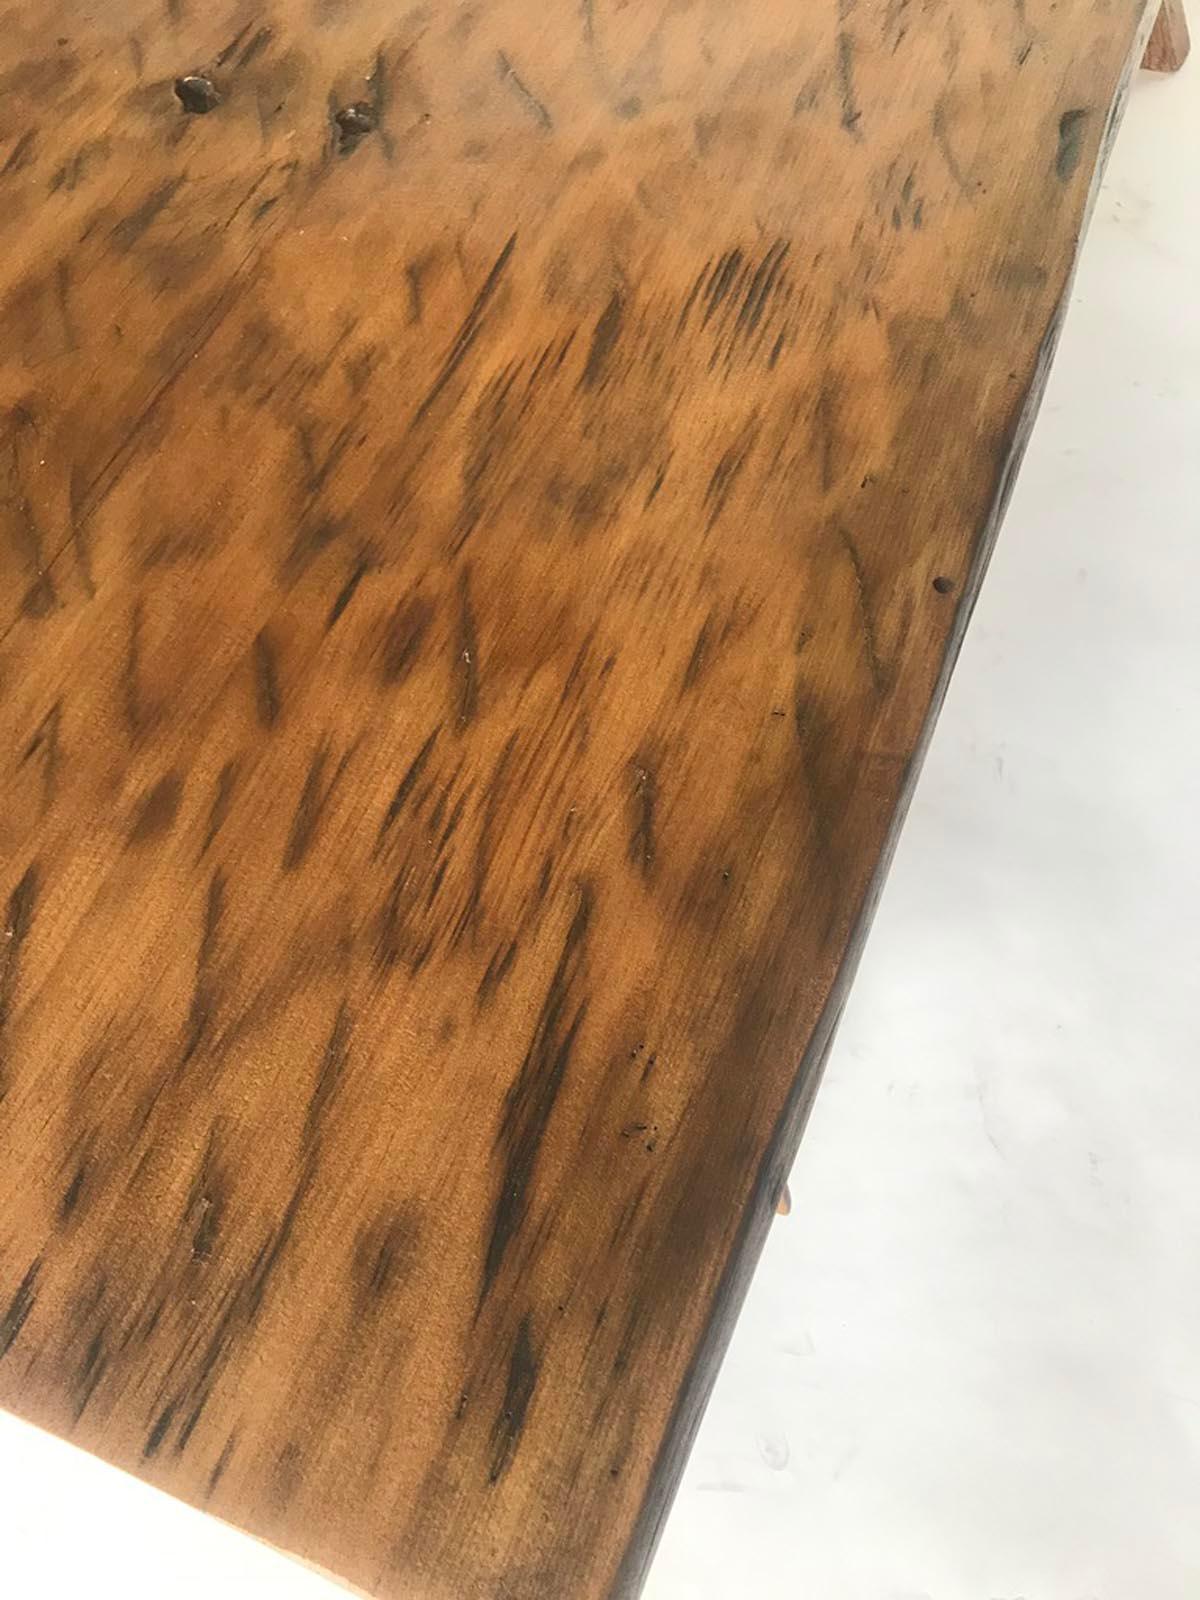 Guatemalan One Wide Board Rustic Coffee Table